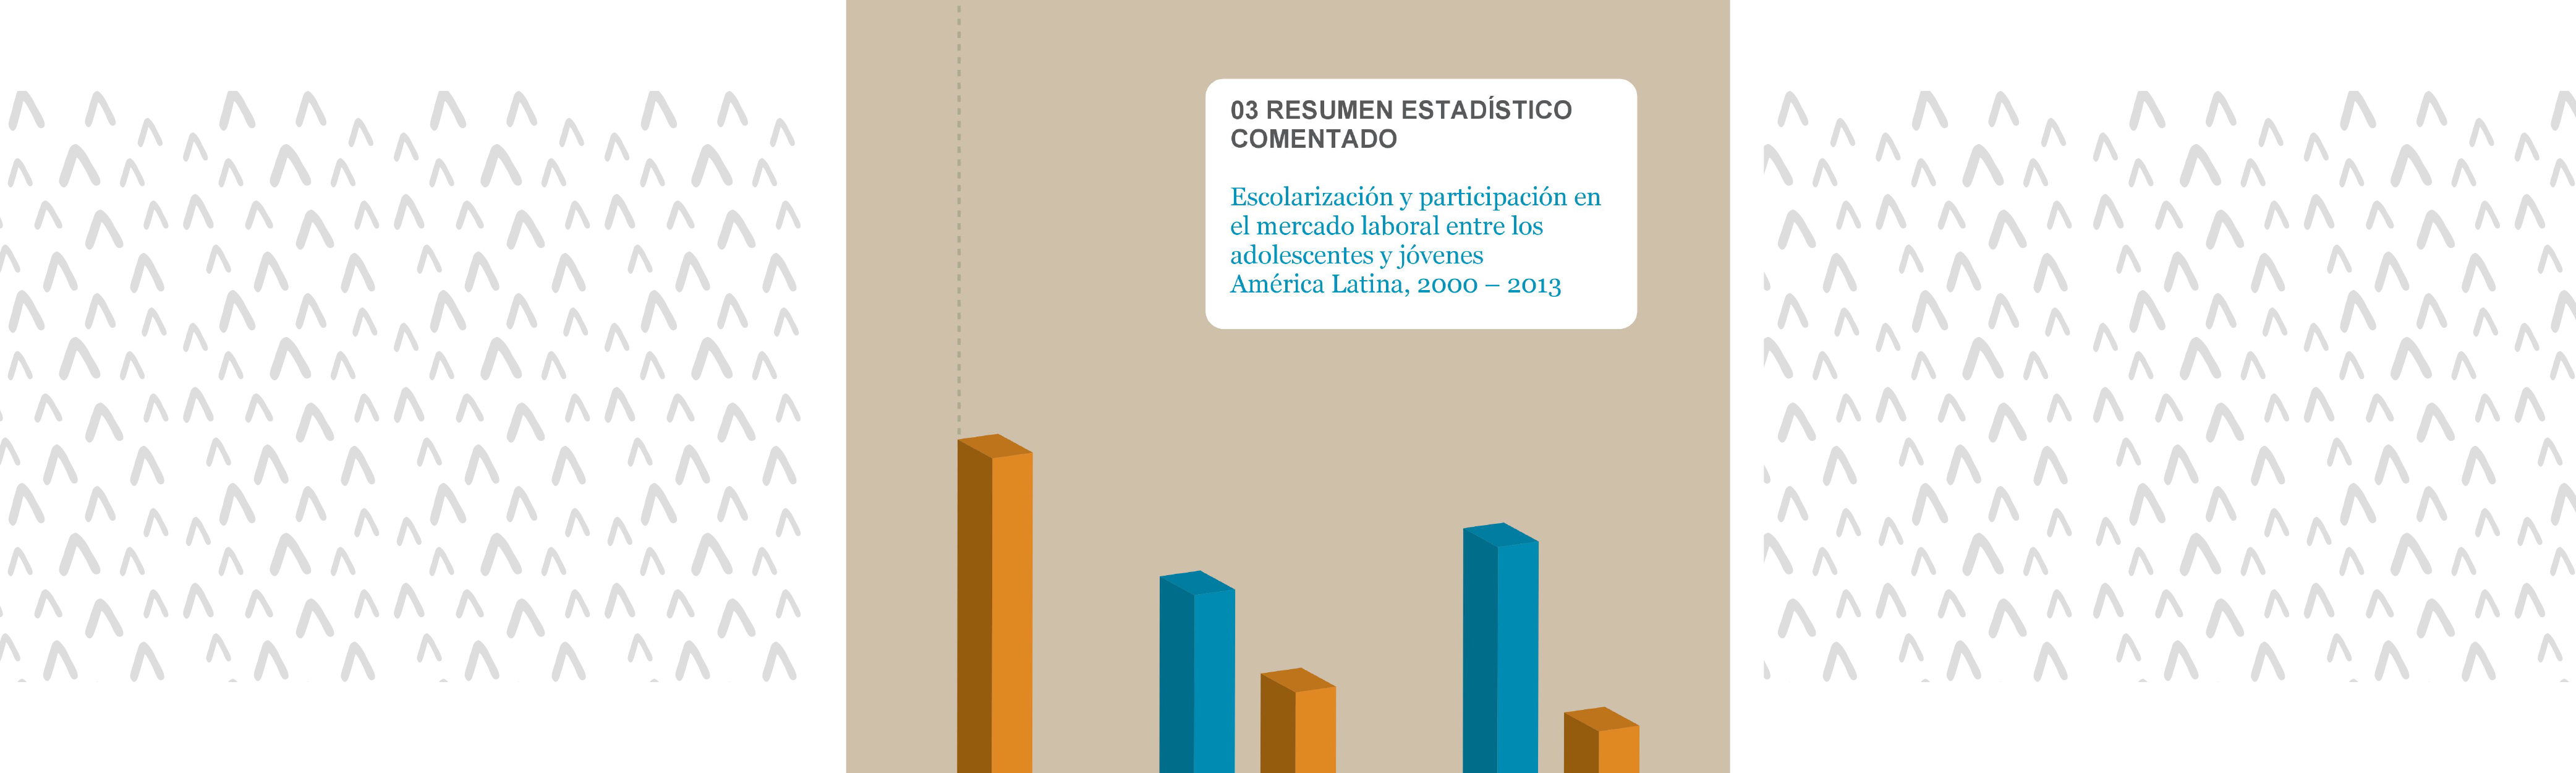 	Escolarización y participación en el mercado laboral entre los adolescentes y jóvenes América Latina, 2000 -2013. Resumen estadístico comentado